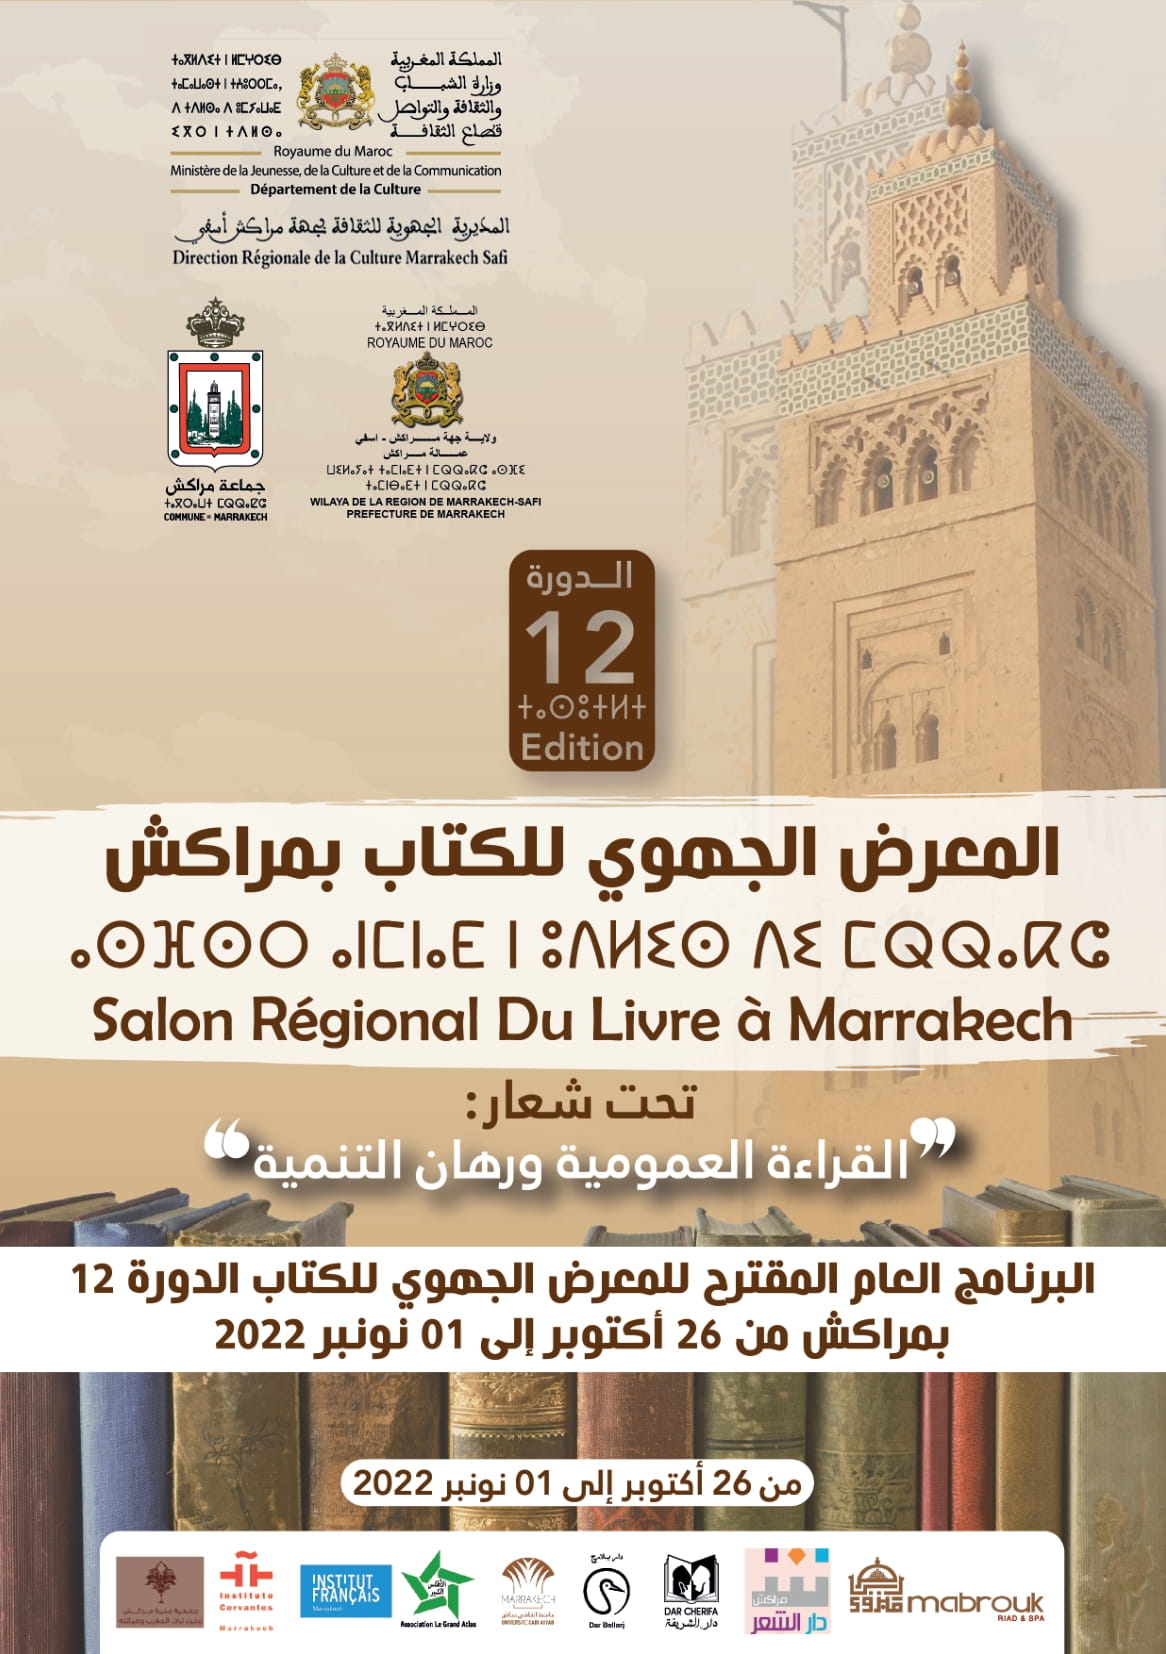 Salon Régional Du Livre 12ème Edition à Marrakech du 26 Octobre au 01 Novembre 2022